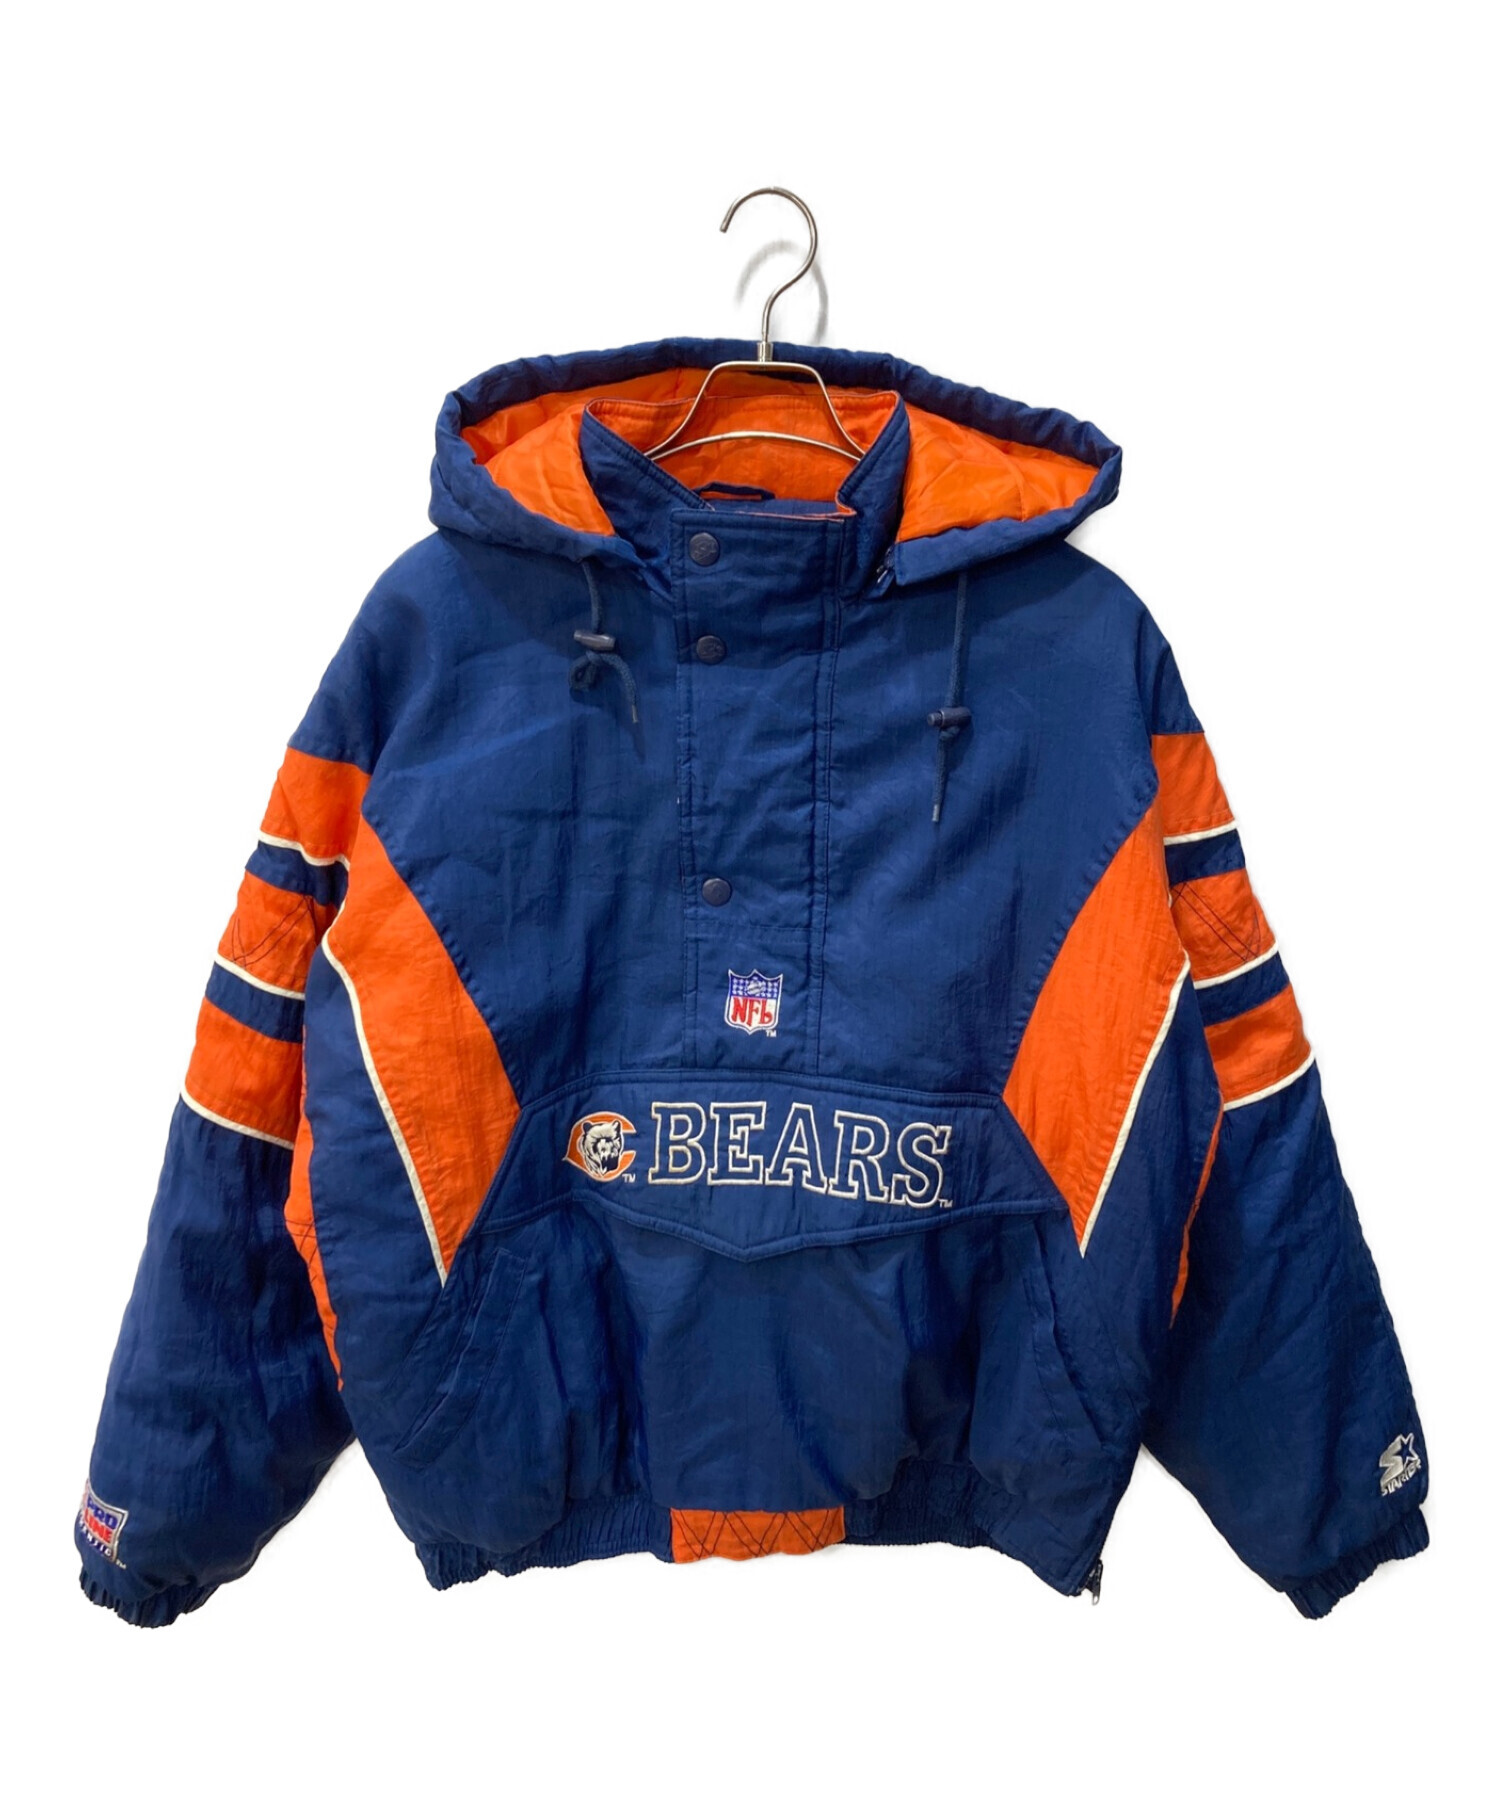 STARTER (スターター) 90s中綿アノラックジャケット ブルー×オレンジ サイズ:L